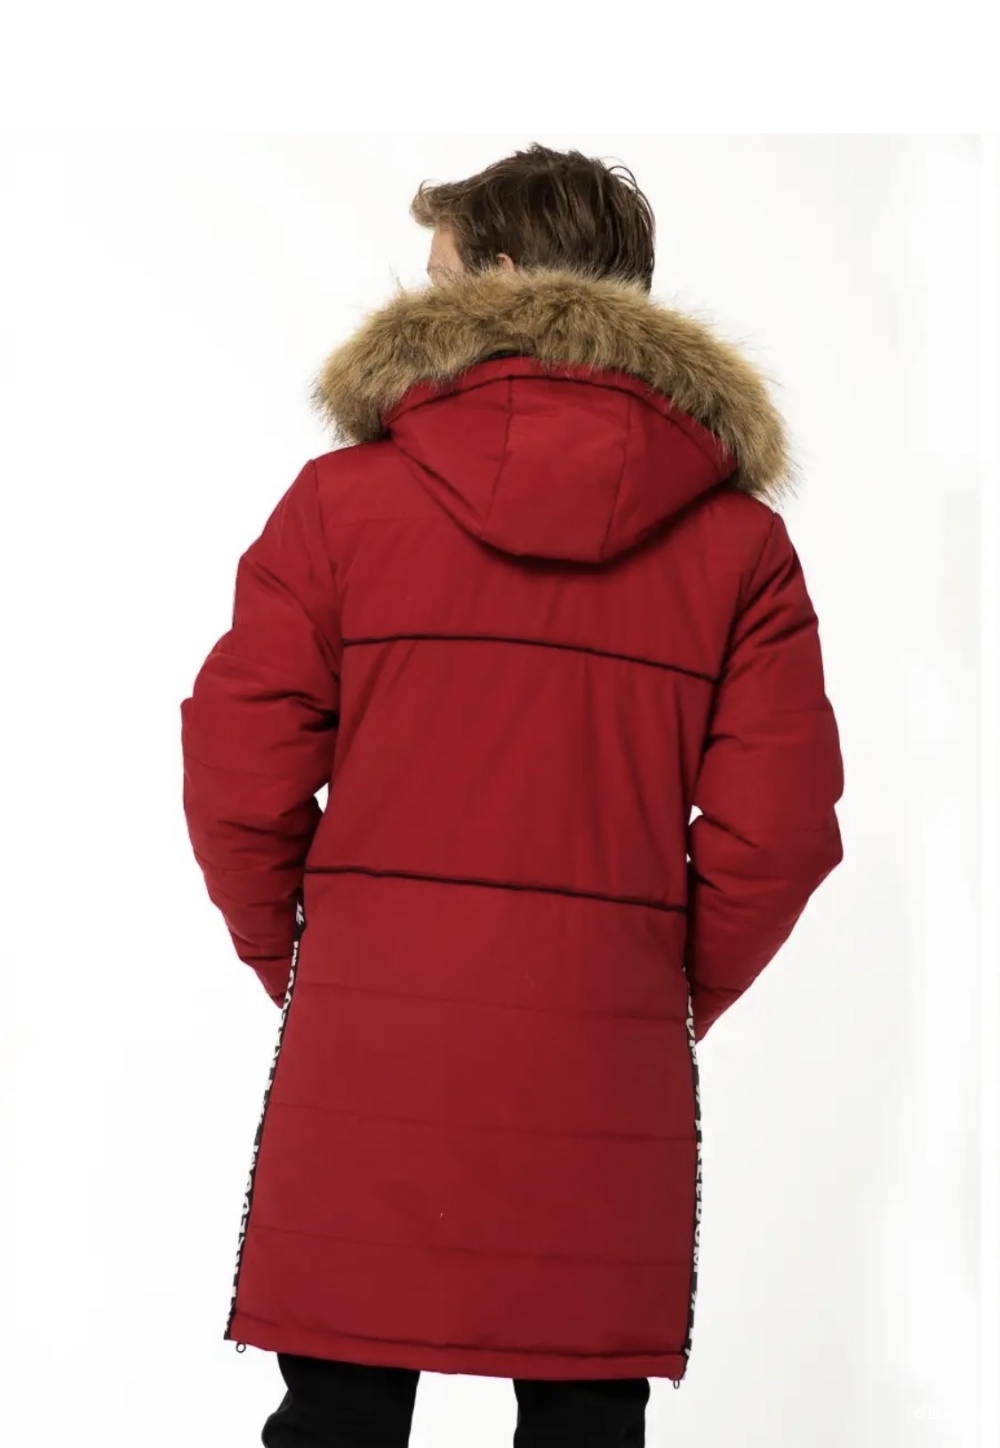 Зимняя куртка-парка Ruff Tuff на мальчика, размер 158